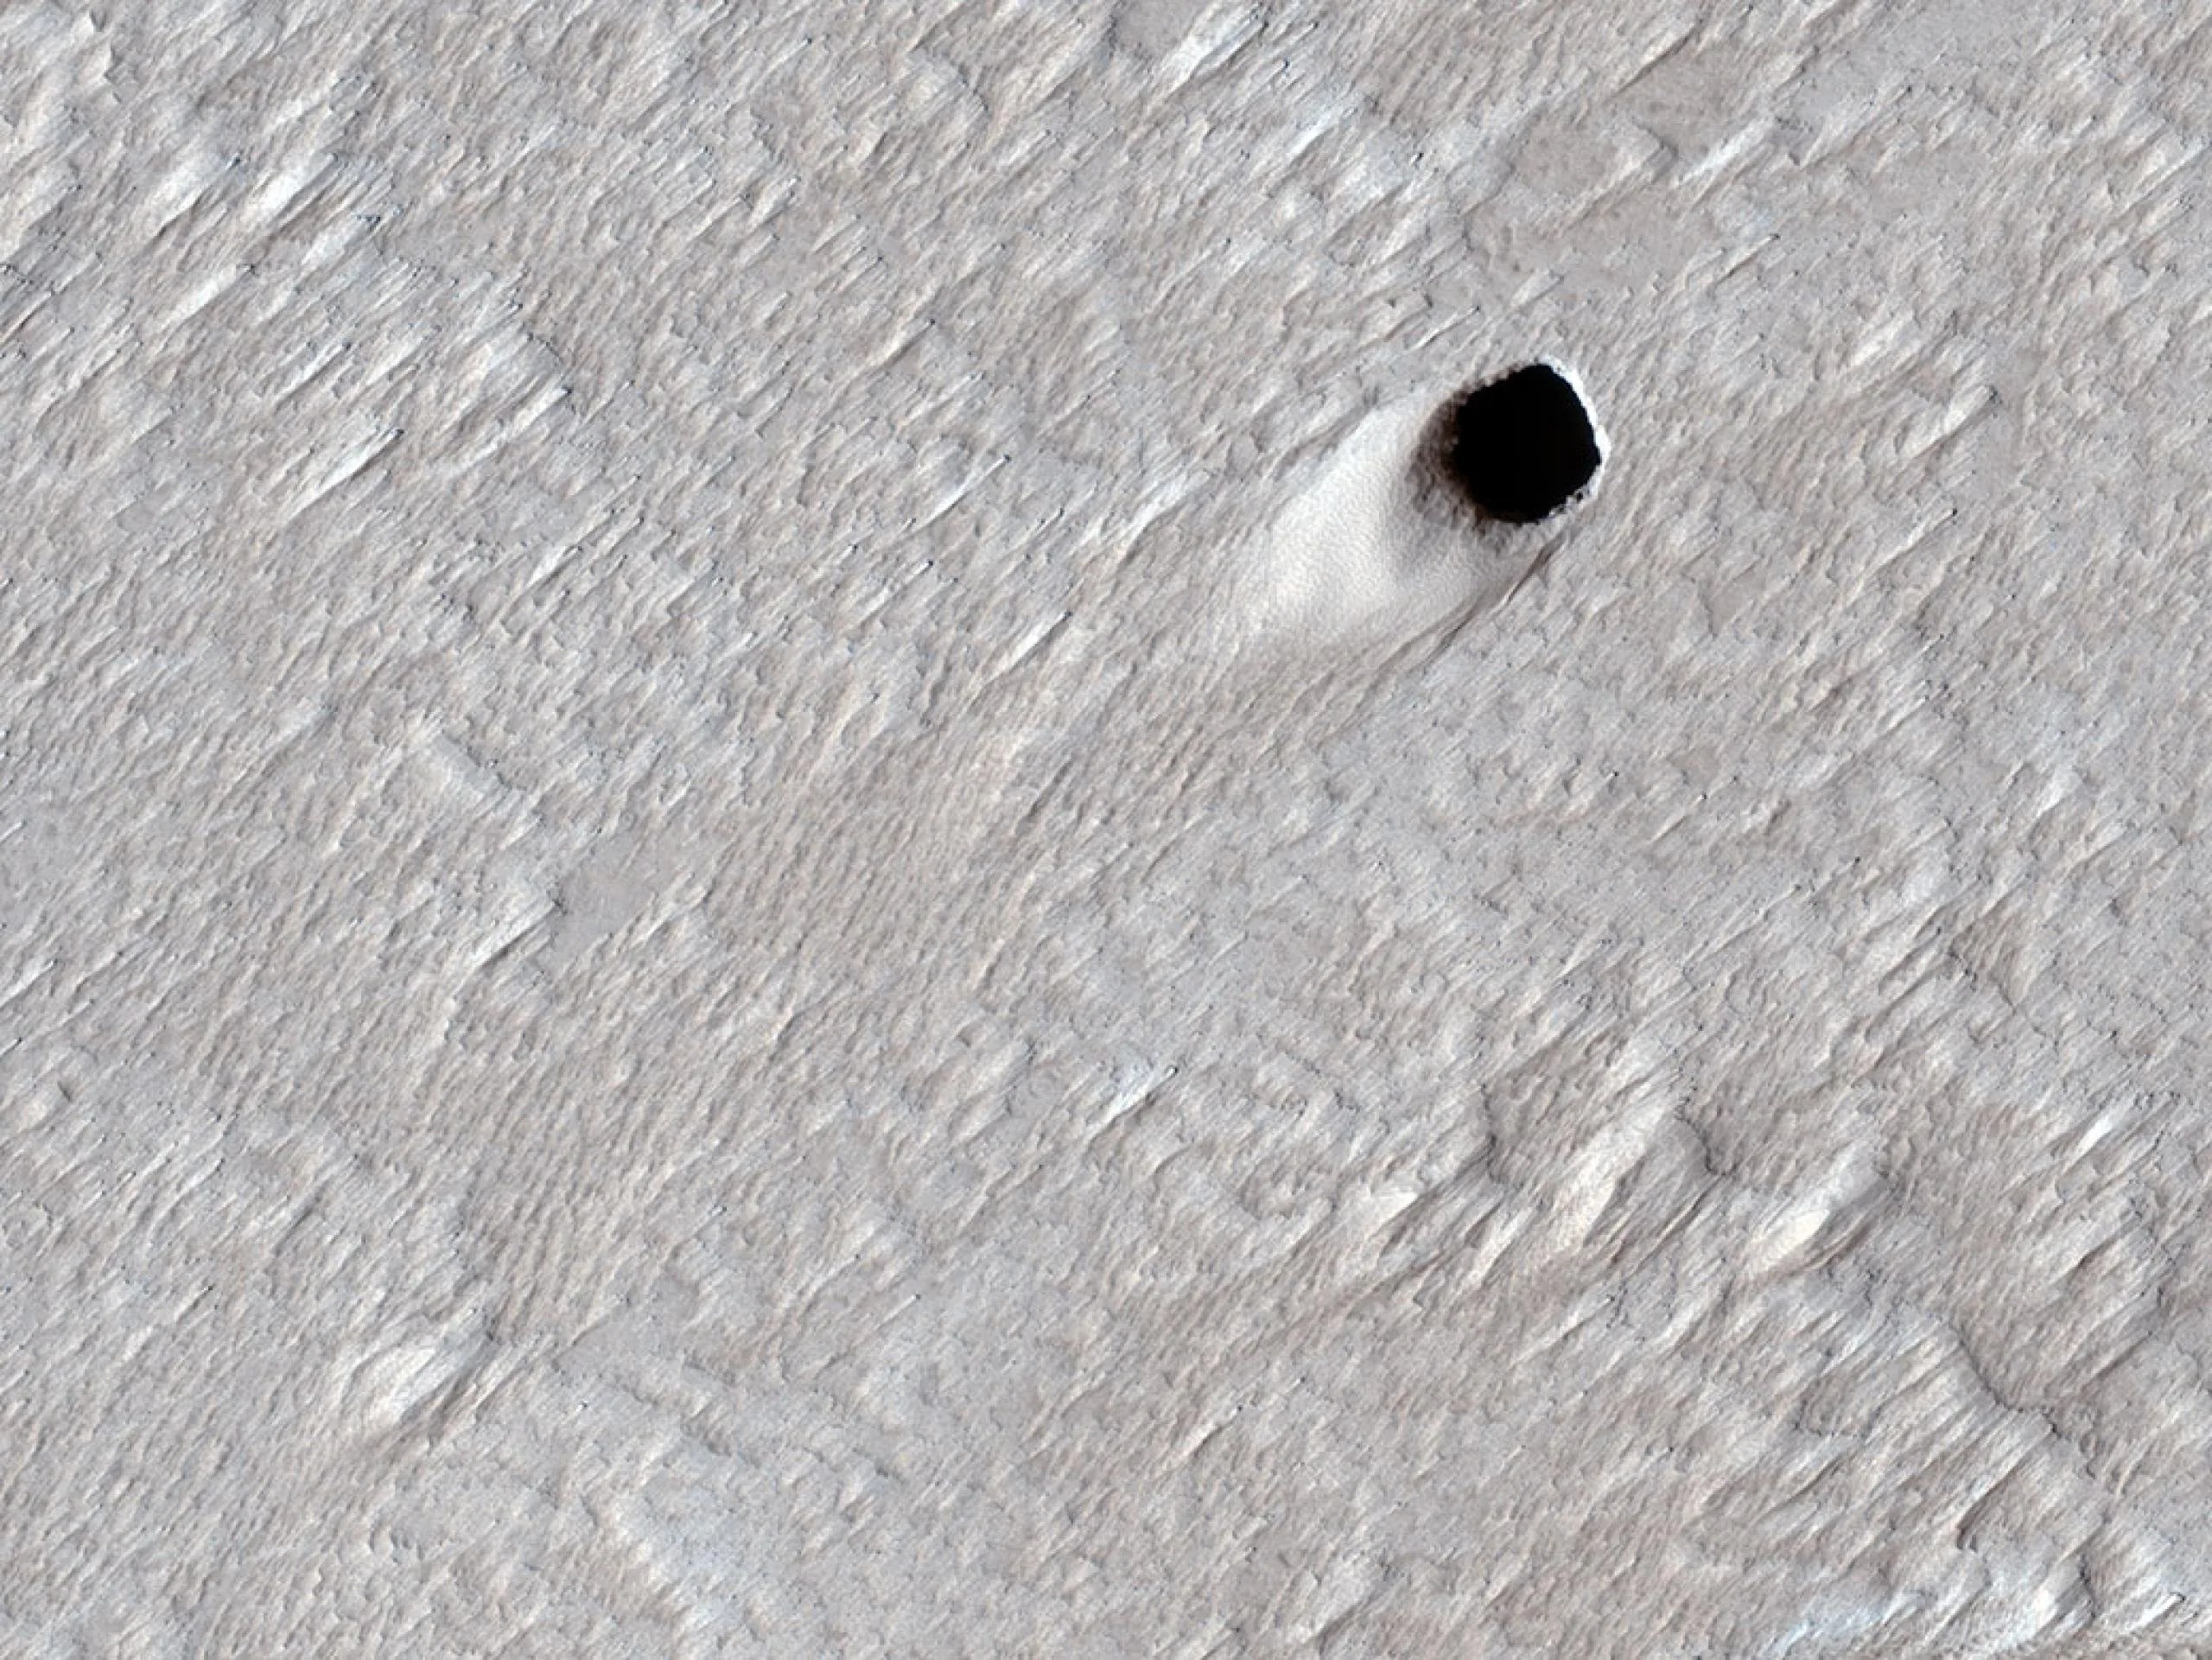 Este cráter de pozo fue creado por un tubo de lava vacío en la región de Arsia Mons de Marte. La imagen fue capturada por el Mars Reconnaissance Orbiter de la NASA el 16 de agosto de 2020. Créditos: NASA / JPL-Caltech / Universidad de Arizona